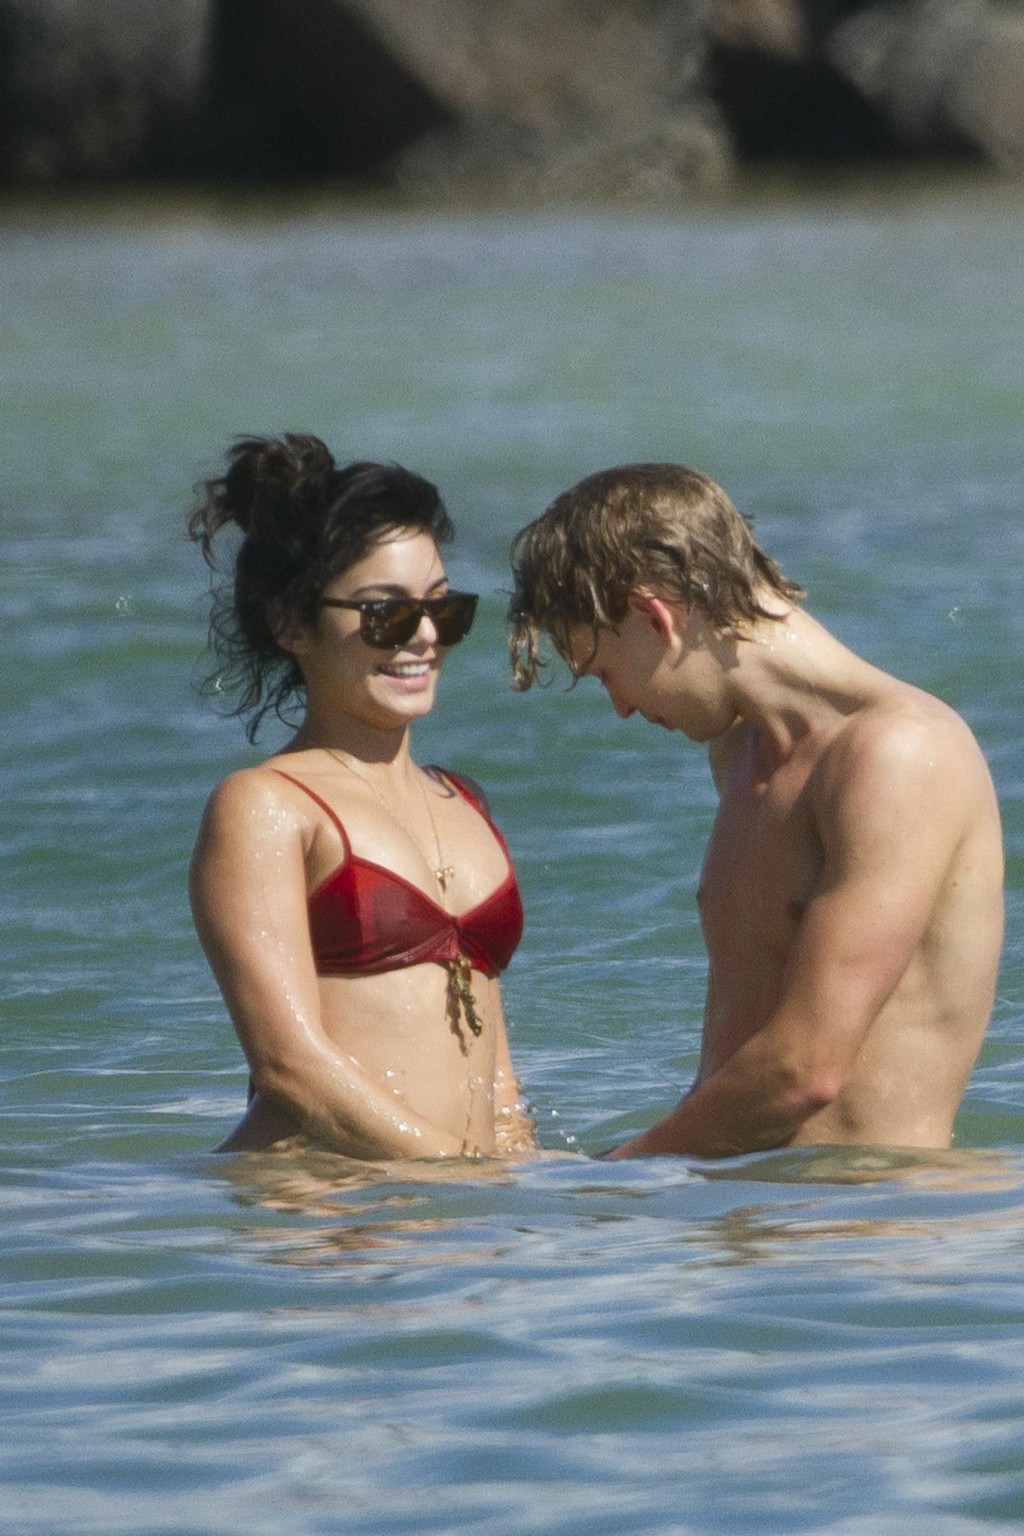 Vanessa hudgens en bikini rouge sexy embrassant son petit ami sur une plage d'hawaii.
 #75275778